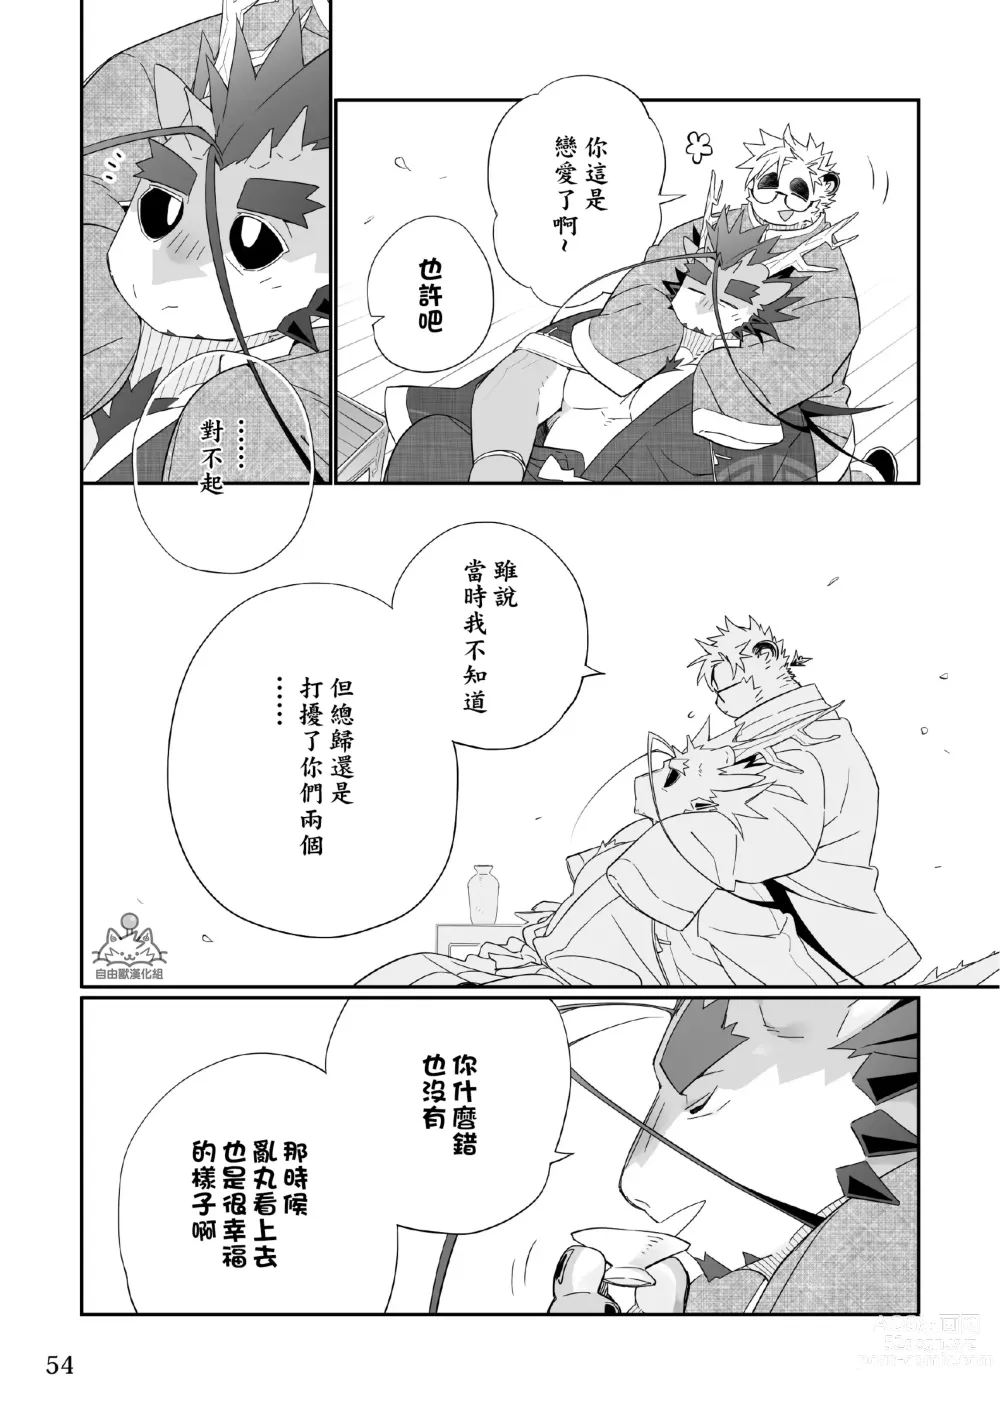 Page 53 of doujinshi Utopia